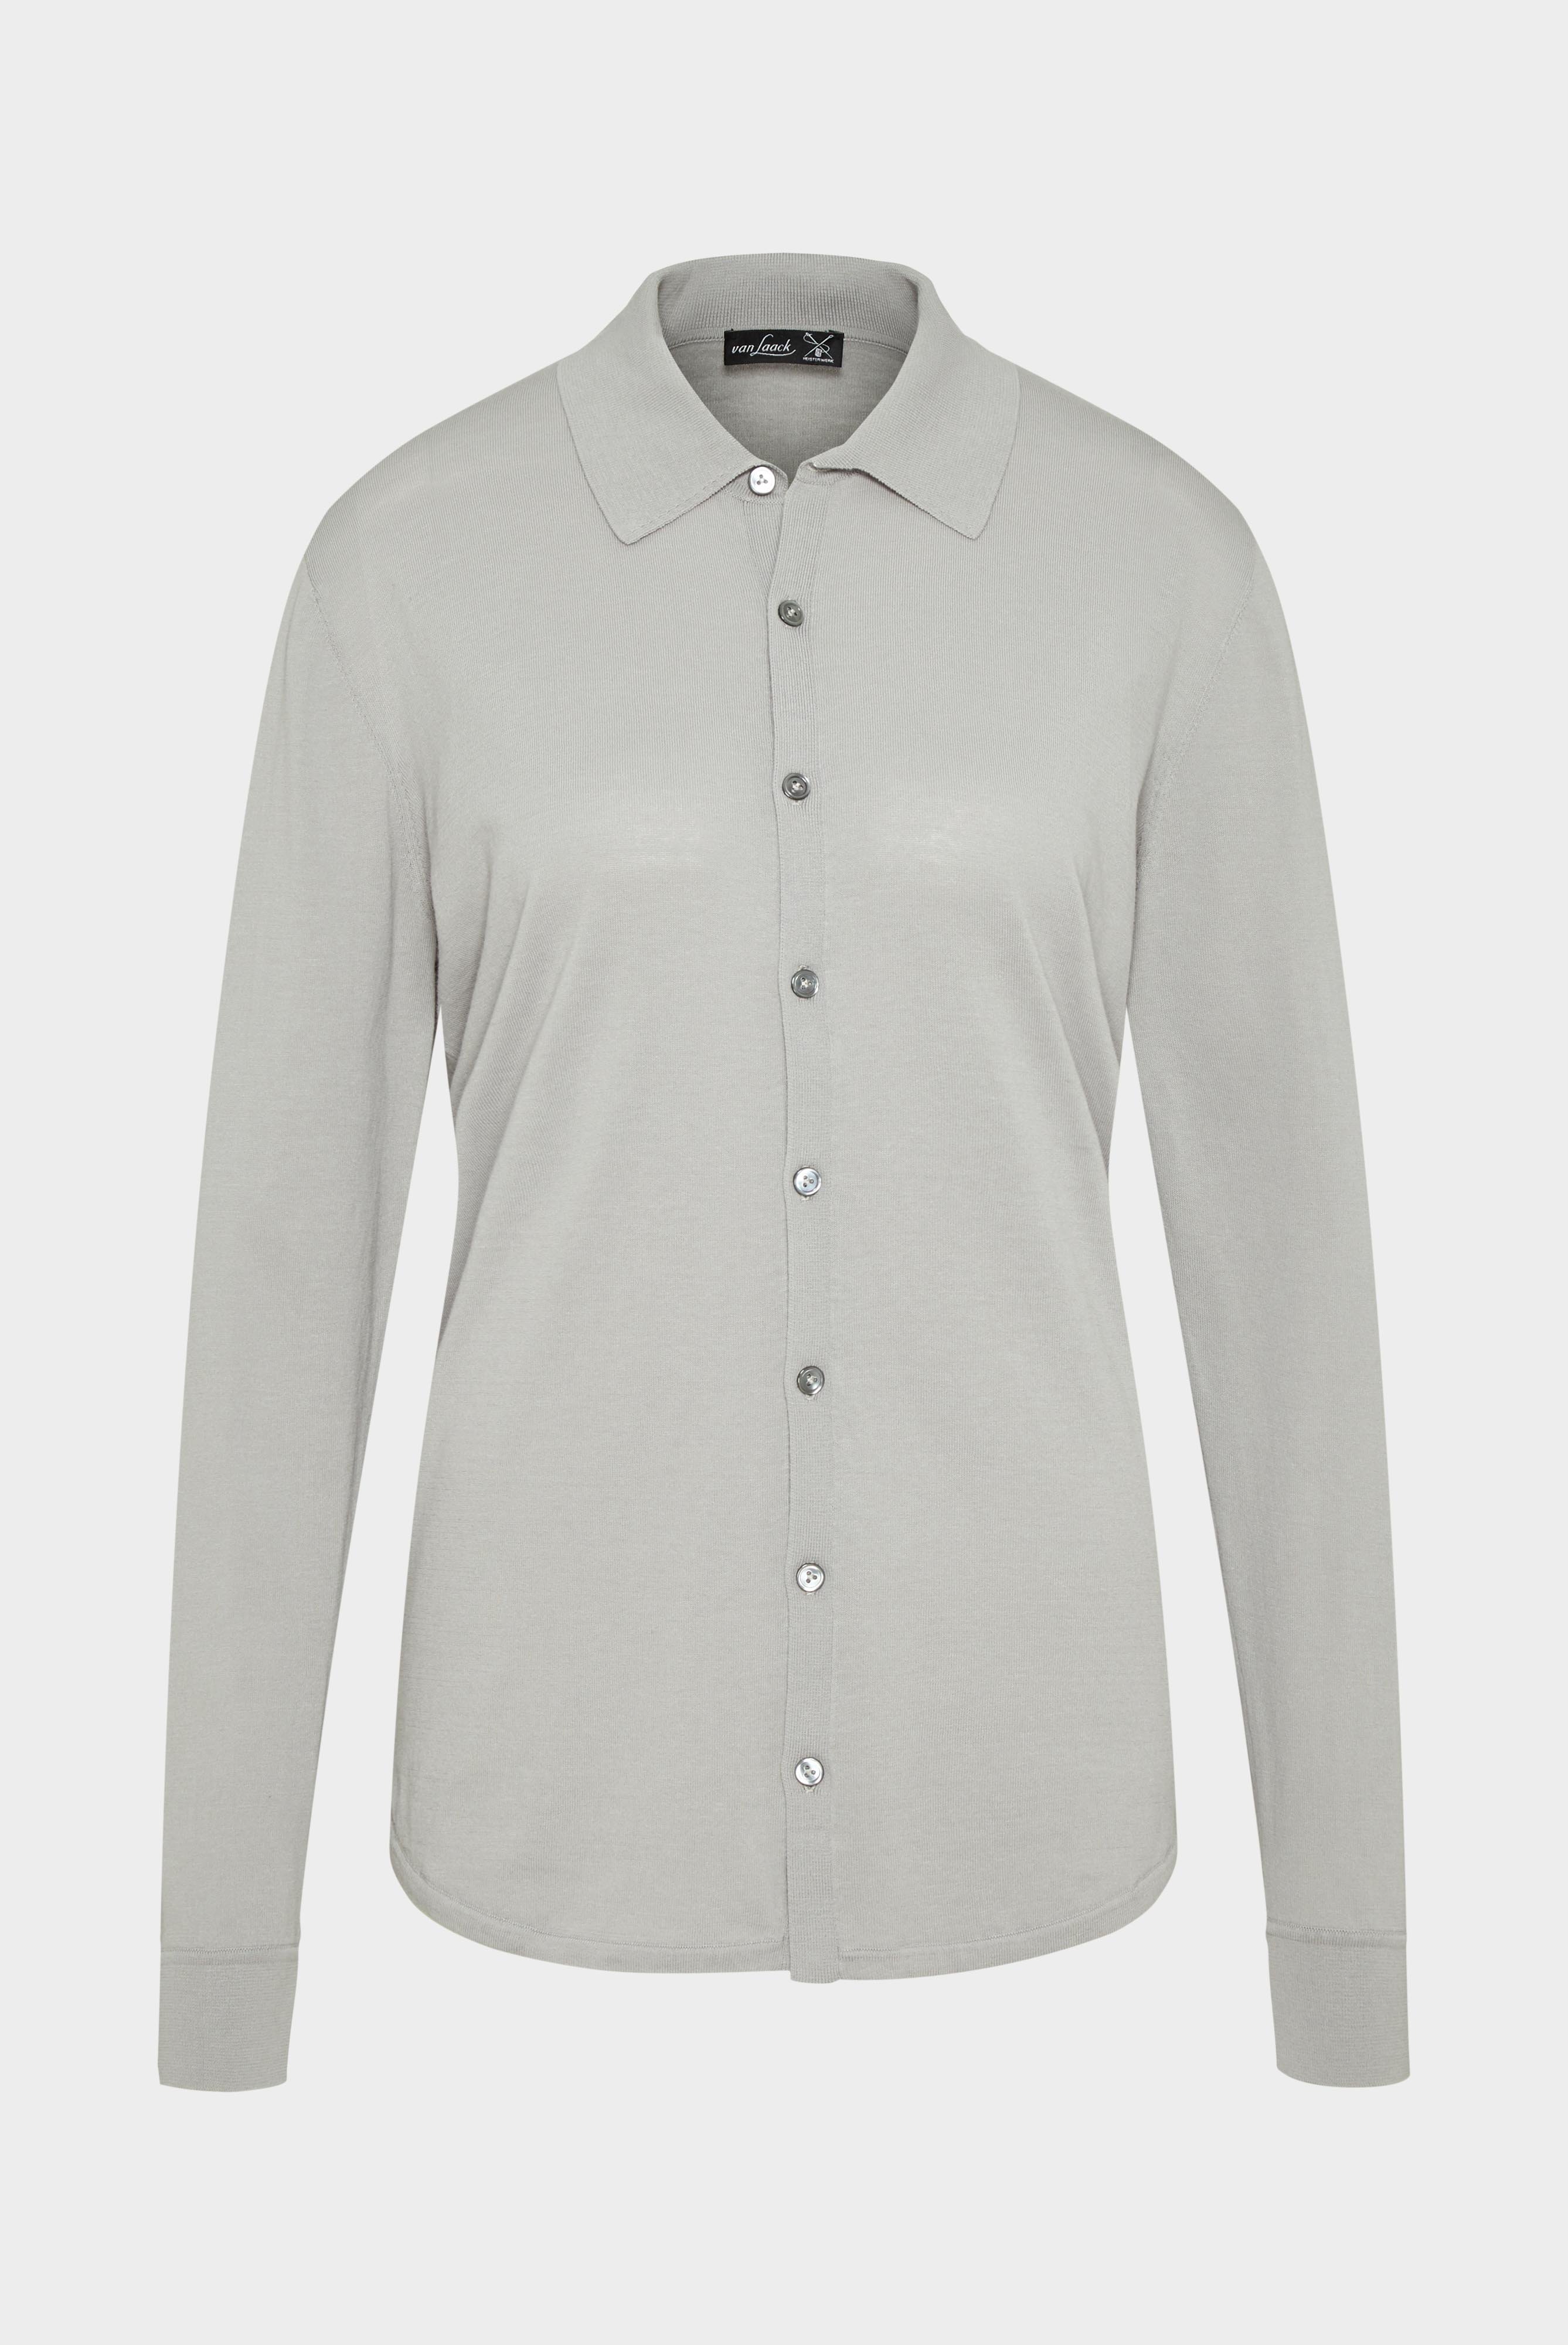 Bügelleichte Hemden+Strick Hemd aus Air Cotton+82.8611..S00174.050.XS